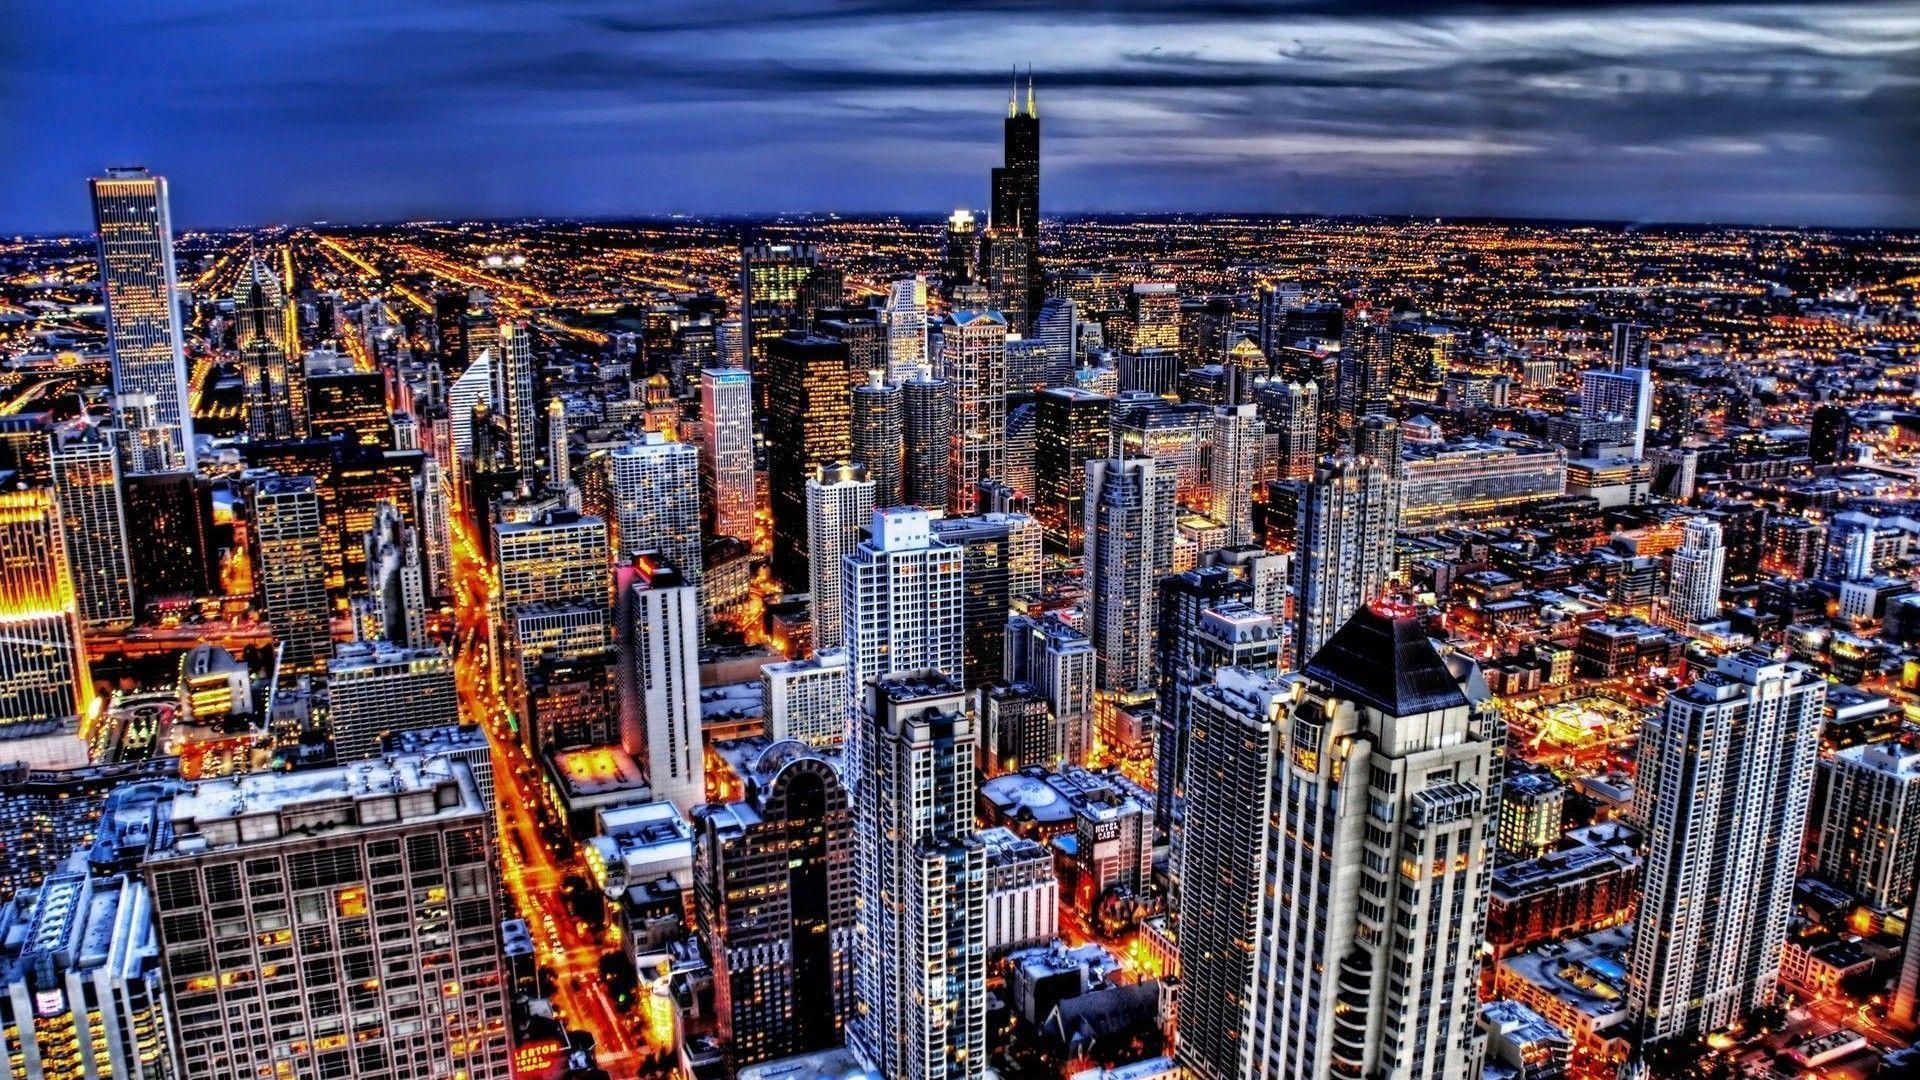 image For > Chicago Bears Wallpaper Skyline